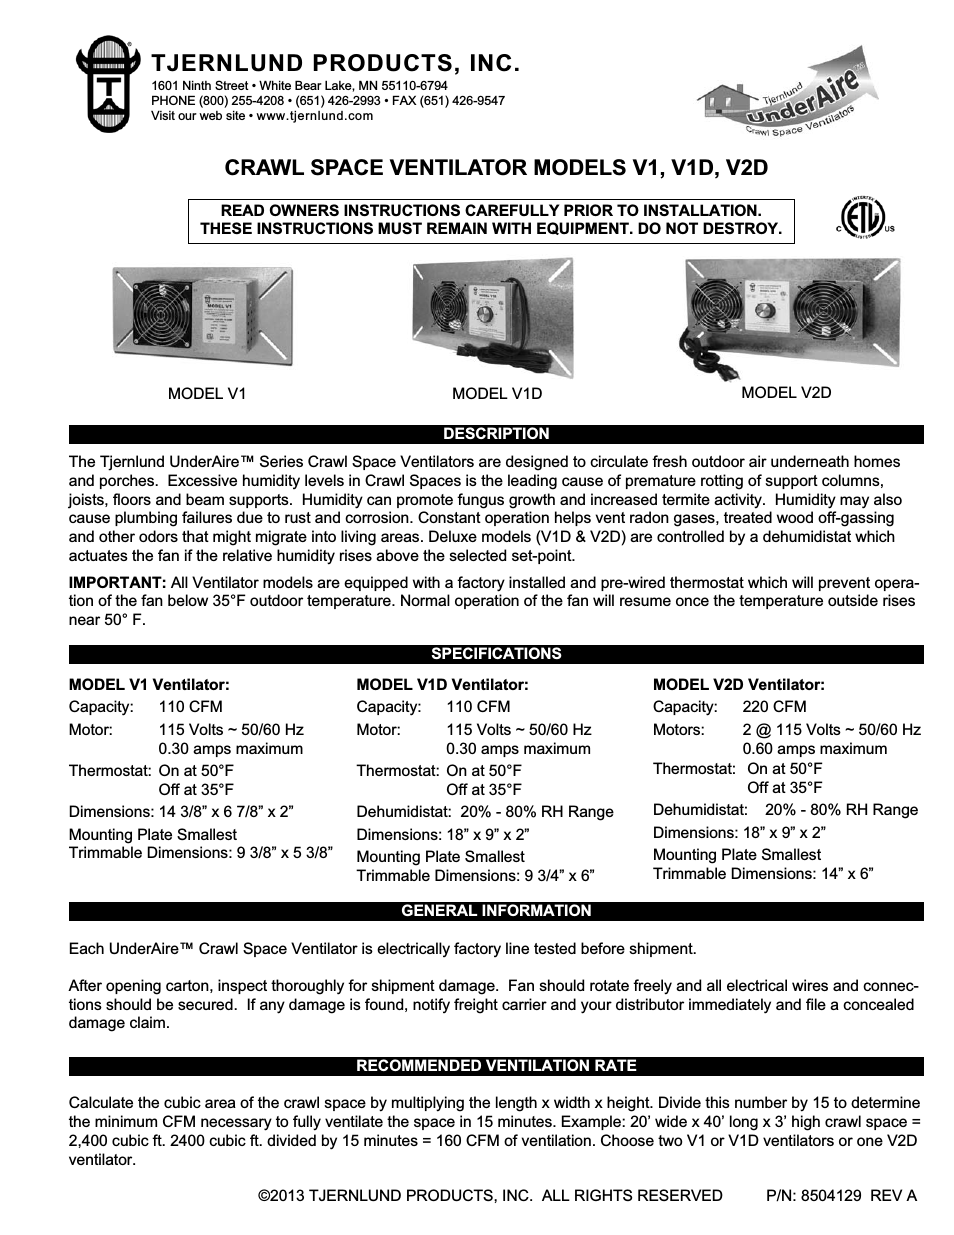 V1D Crawl Space Ventilators 8504129 Rev A